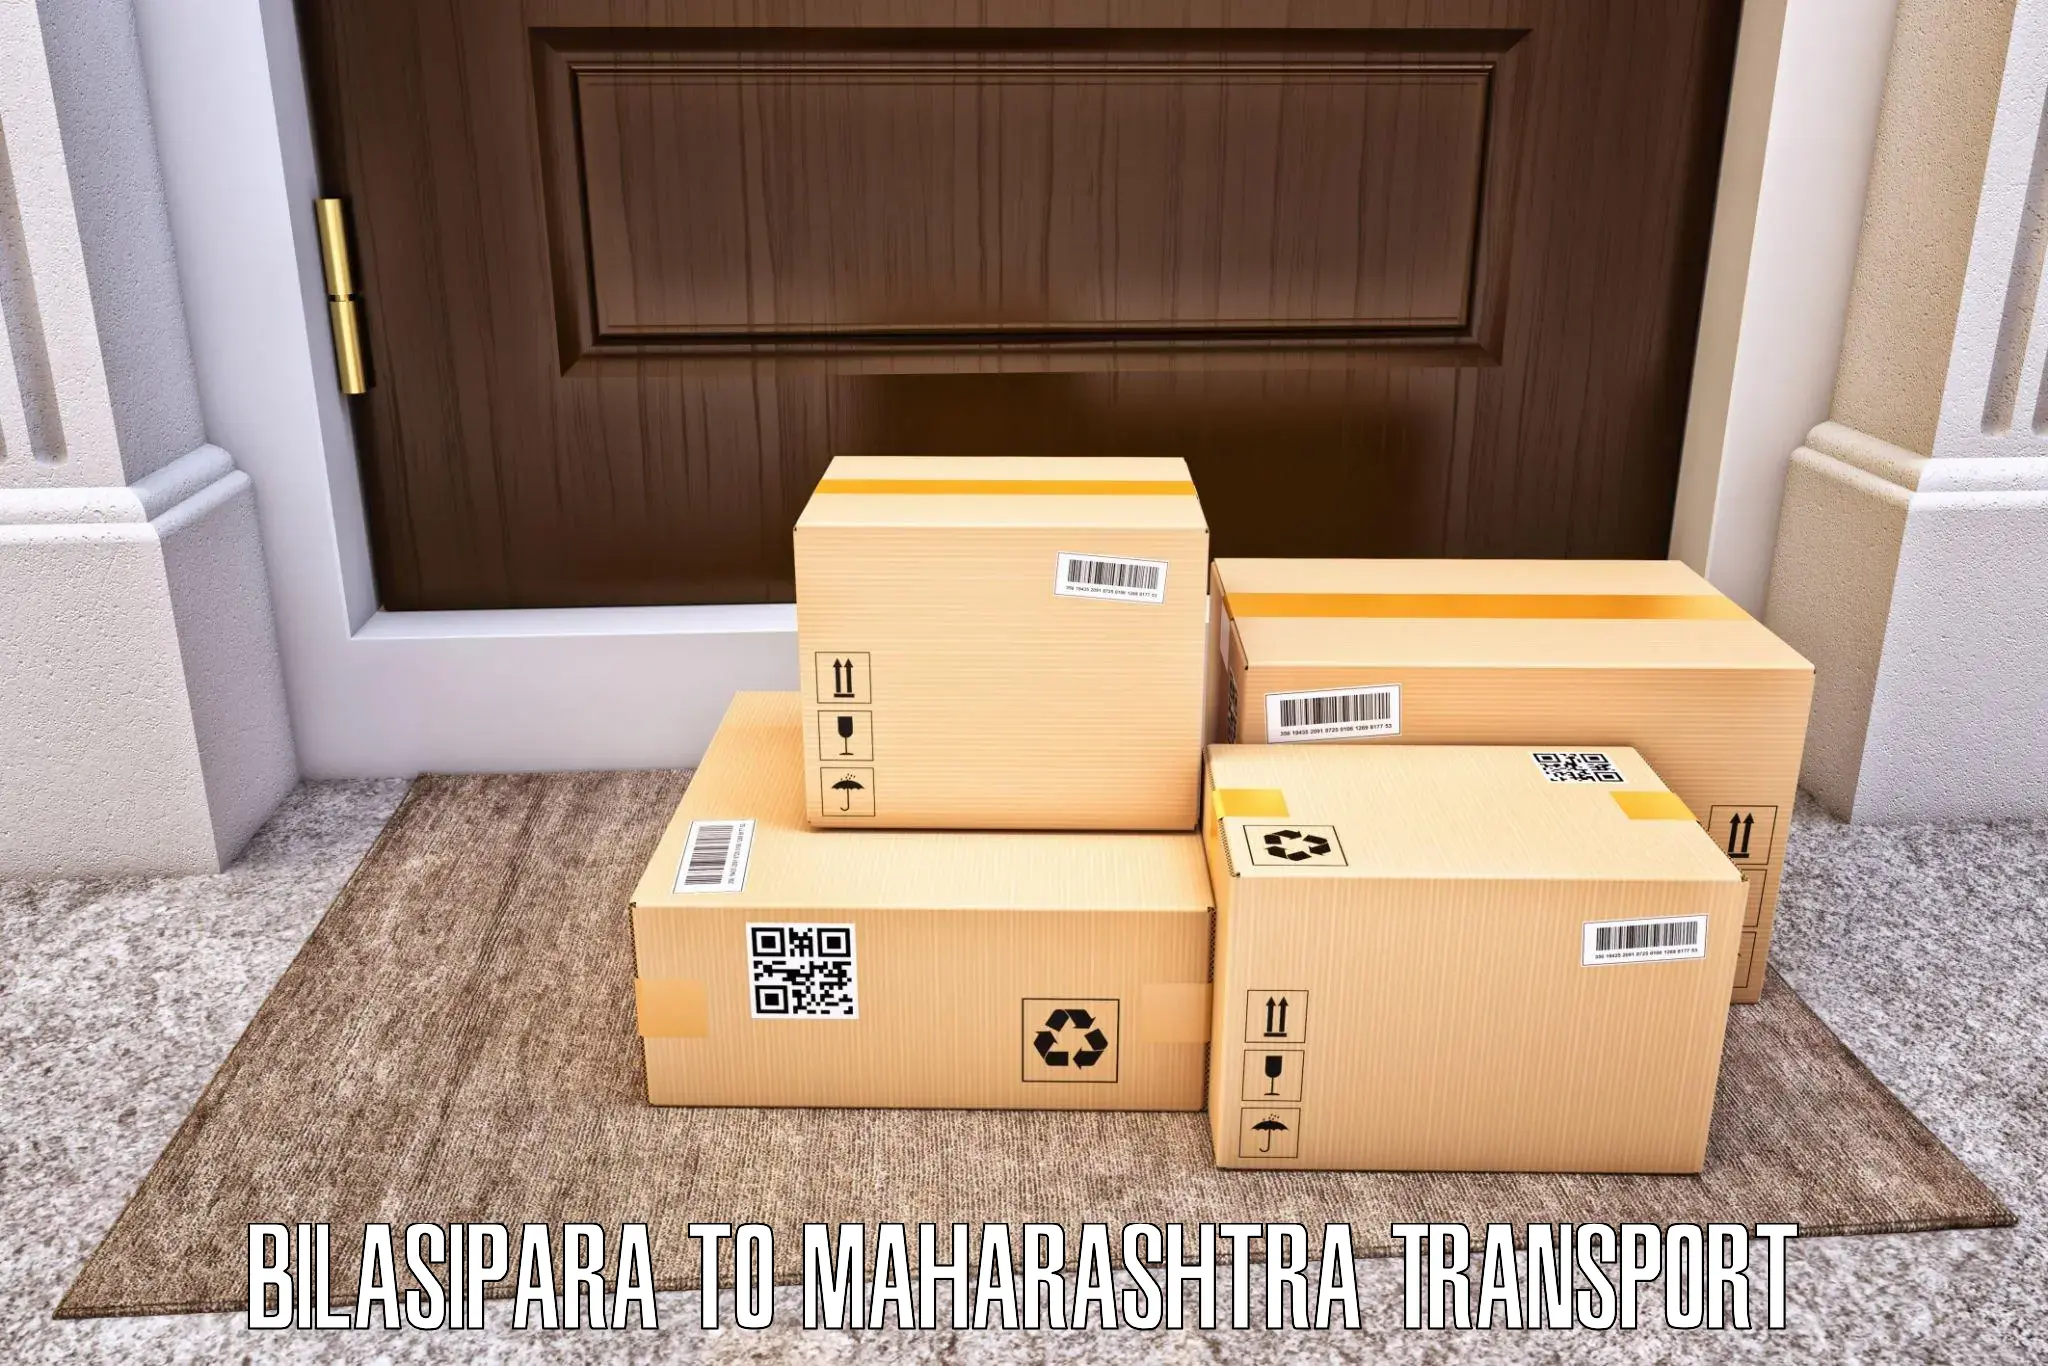 Daily parcel service transport Bilasipara to Waranga Phata